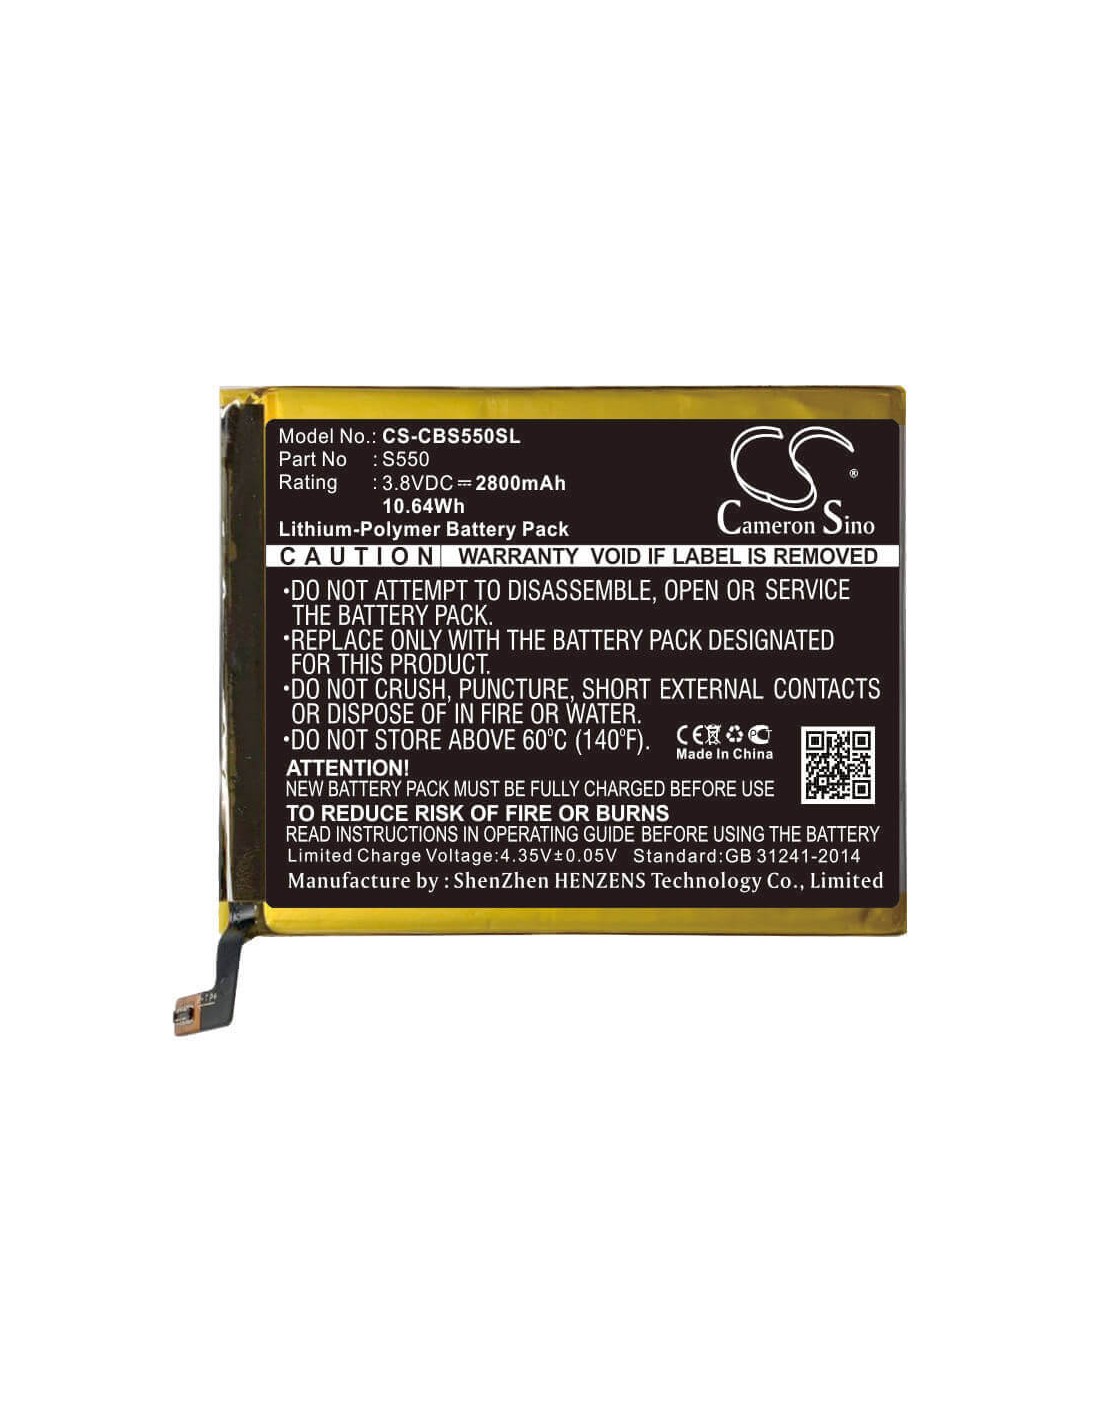 Battery for Cubot, S550 3.8V, 2800mAh - 10.64Wh